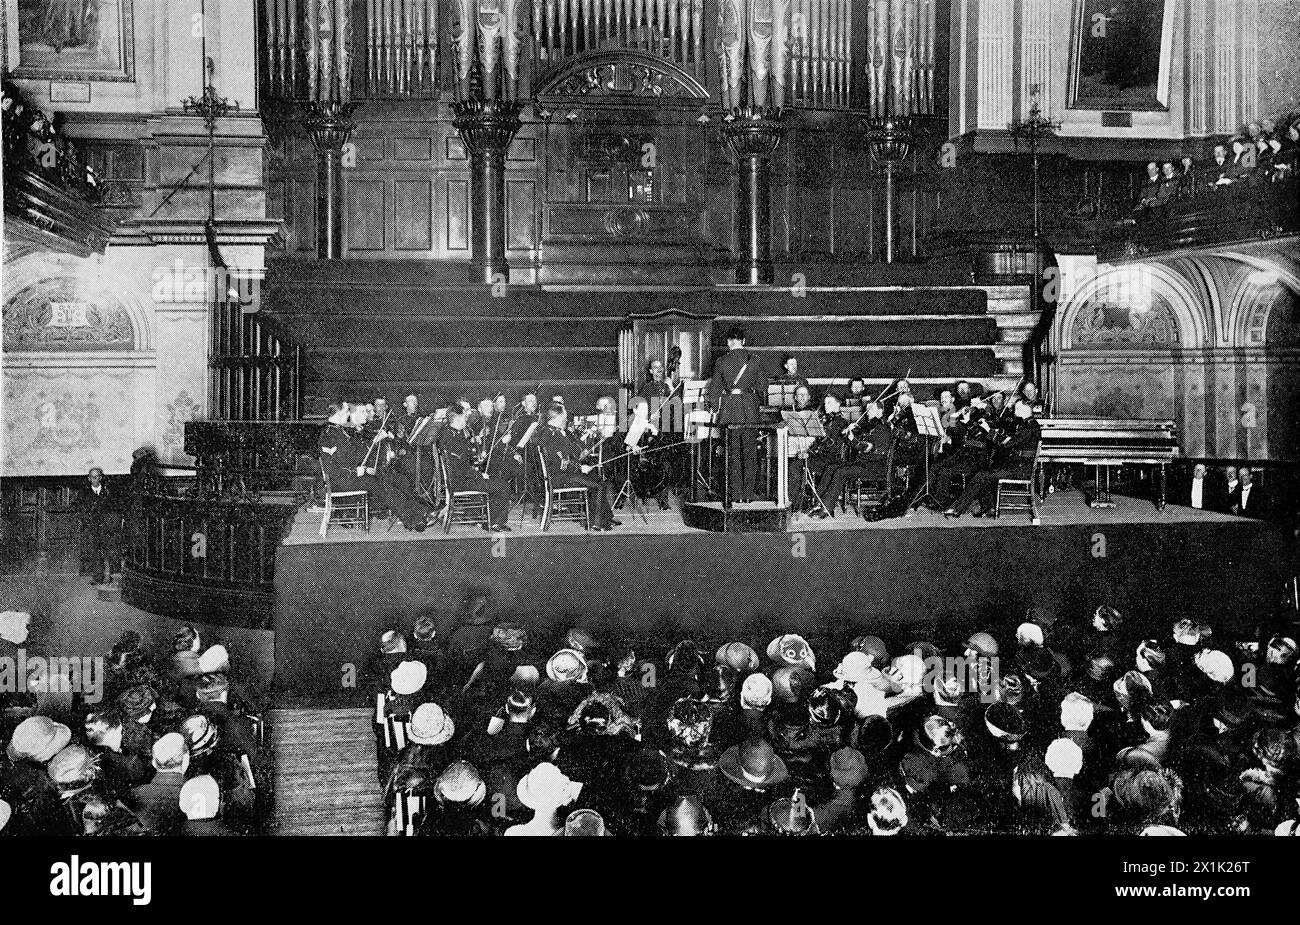 Die Royal Marines Band aus Eastney während eines Auftritts im Portsmouth Town Hall. Ursprünglich gedruckt und veröffentlicht für die Portsmouth and Southsea Improvement Association, 1924. Stockfoto